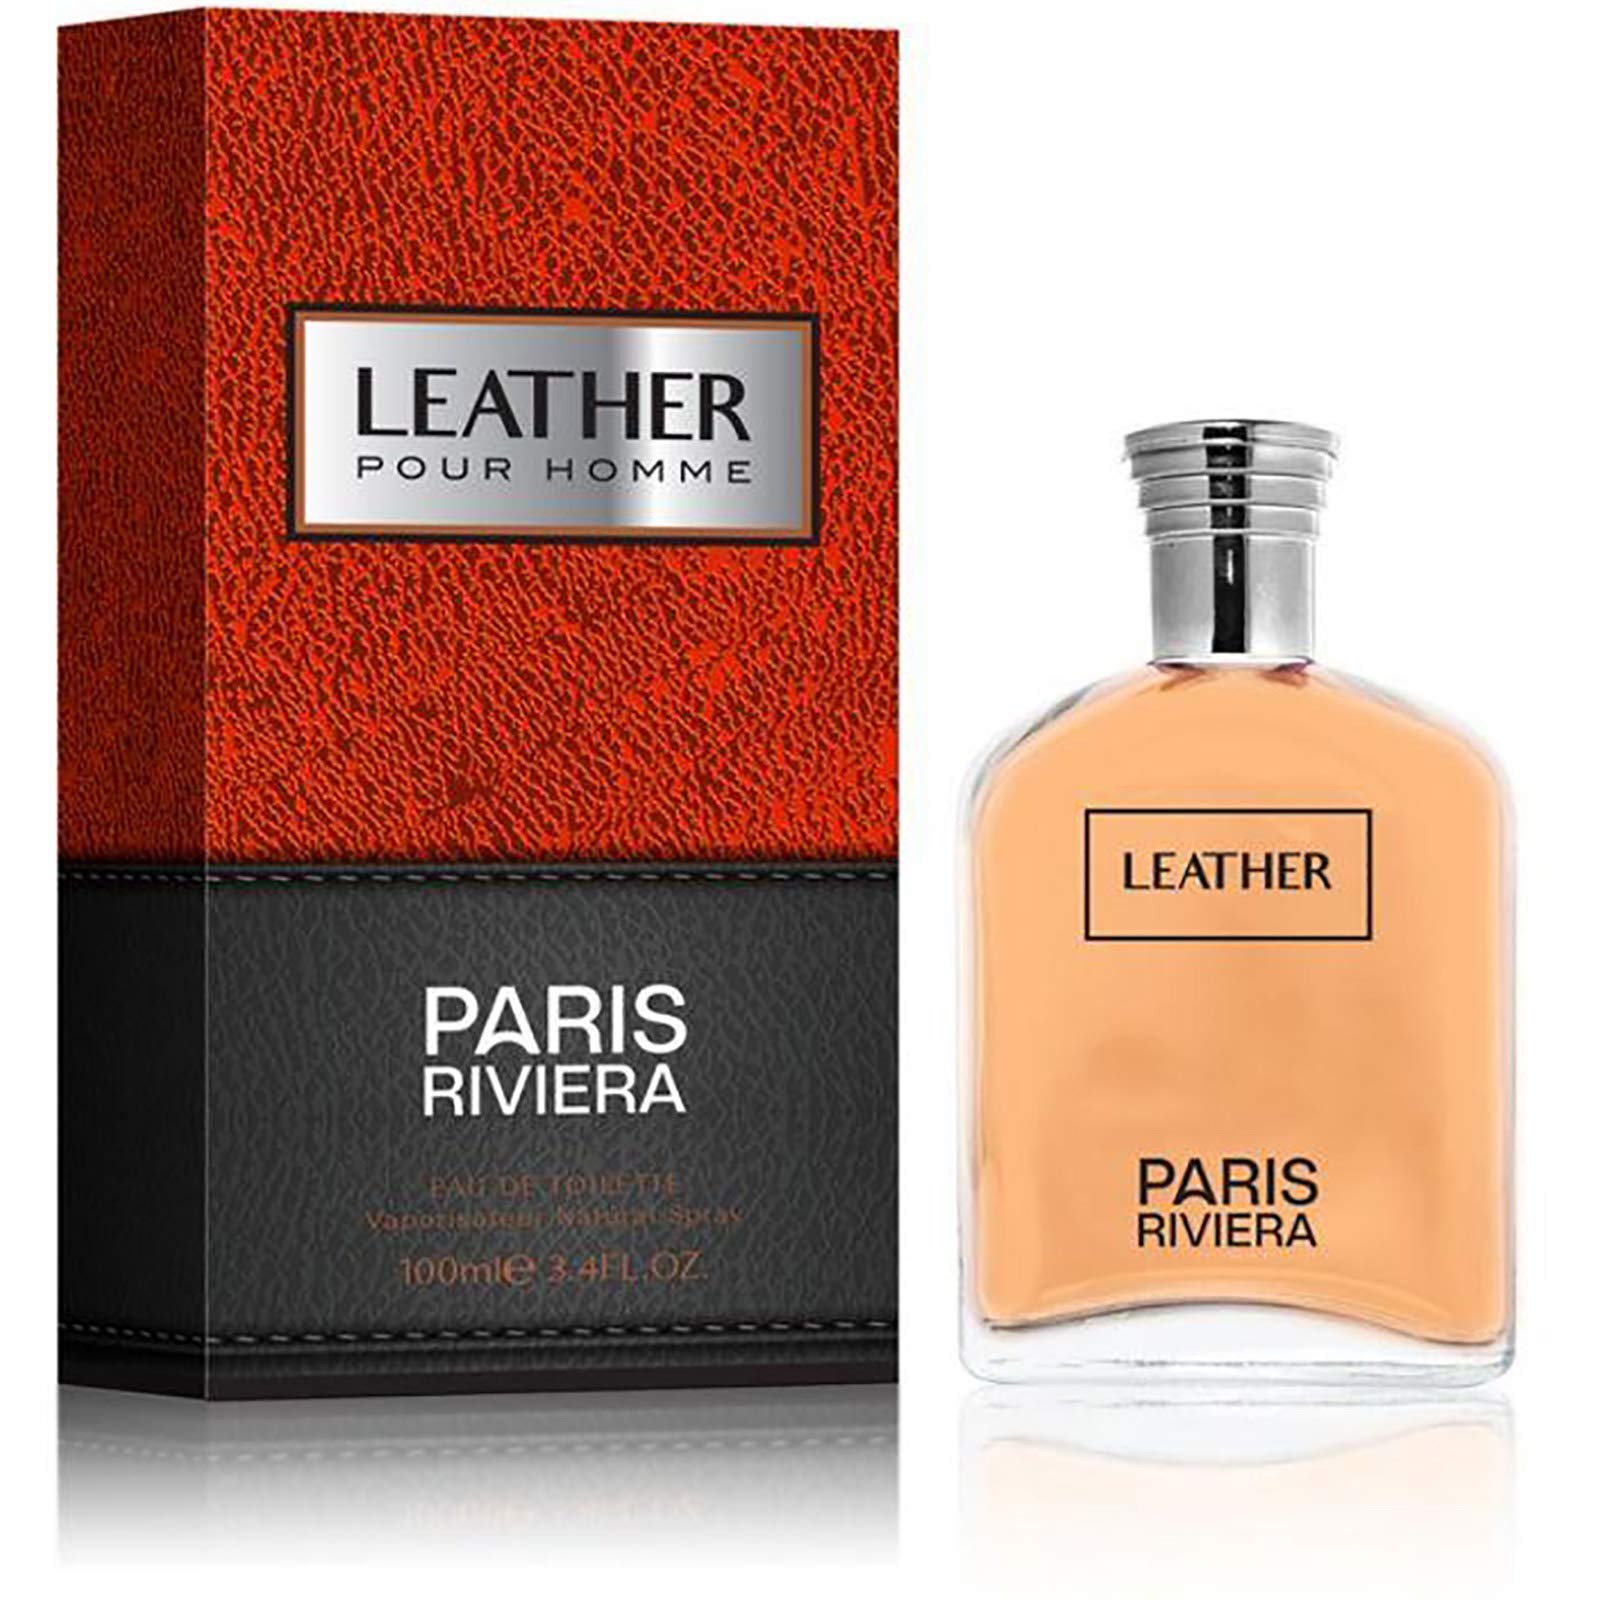 Leather by Paris Riviera for Men - Eau de Toilette, 100 ml